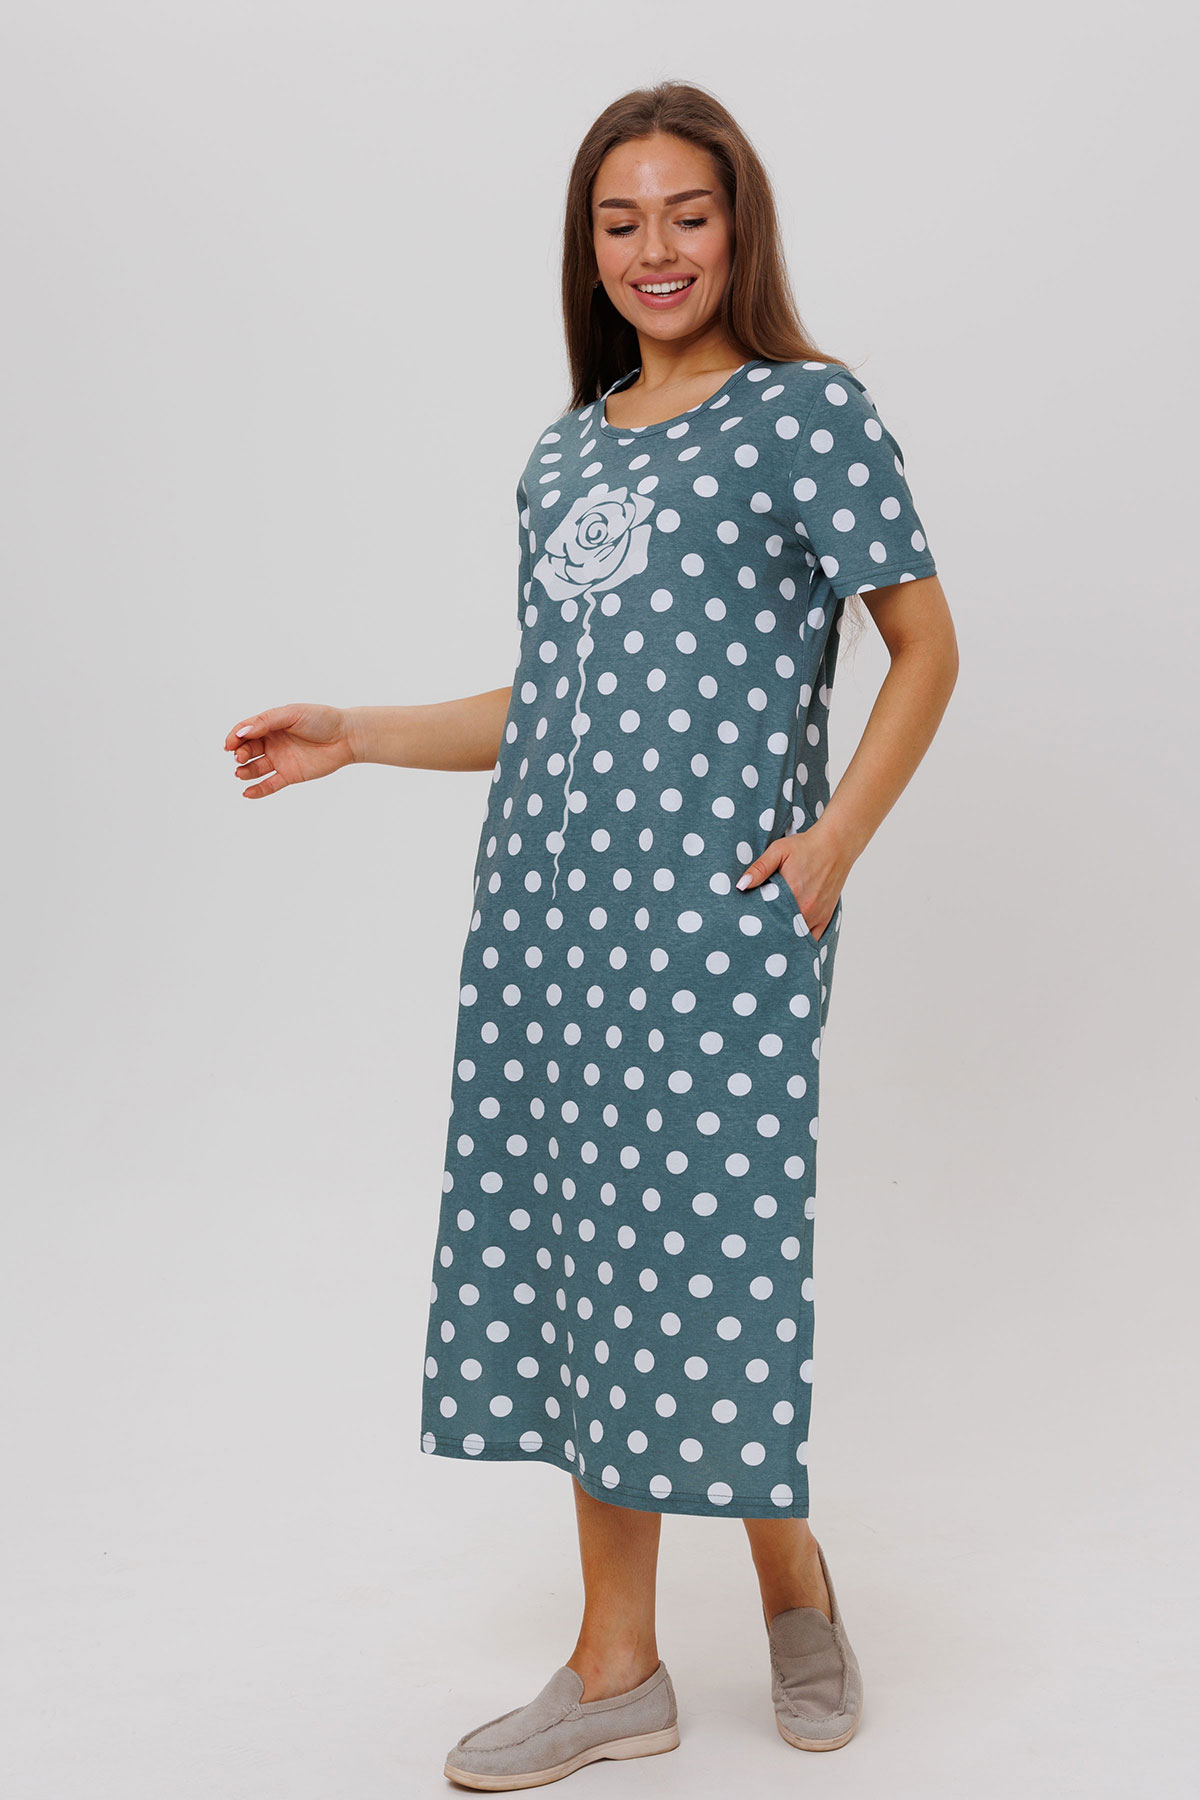 Жен. платье повседневное арт. 23-0545 Зеленый р. 50 Моделлини, размер 50 - фото 3